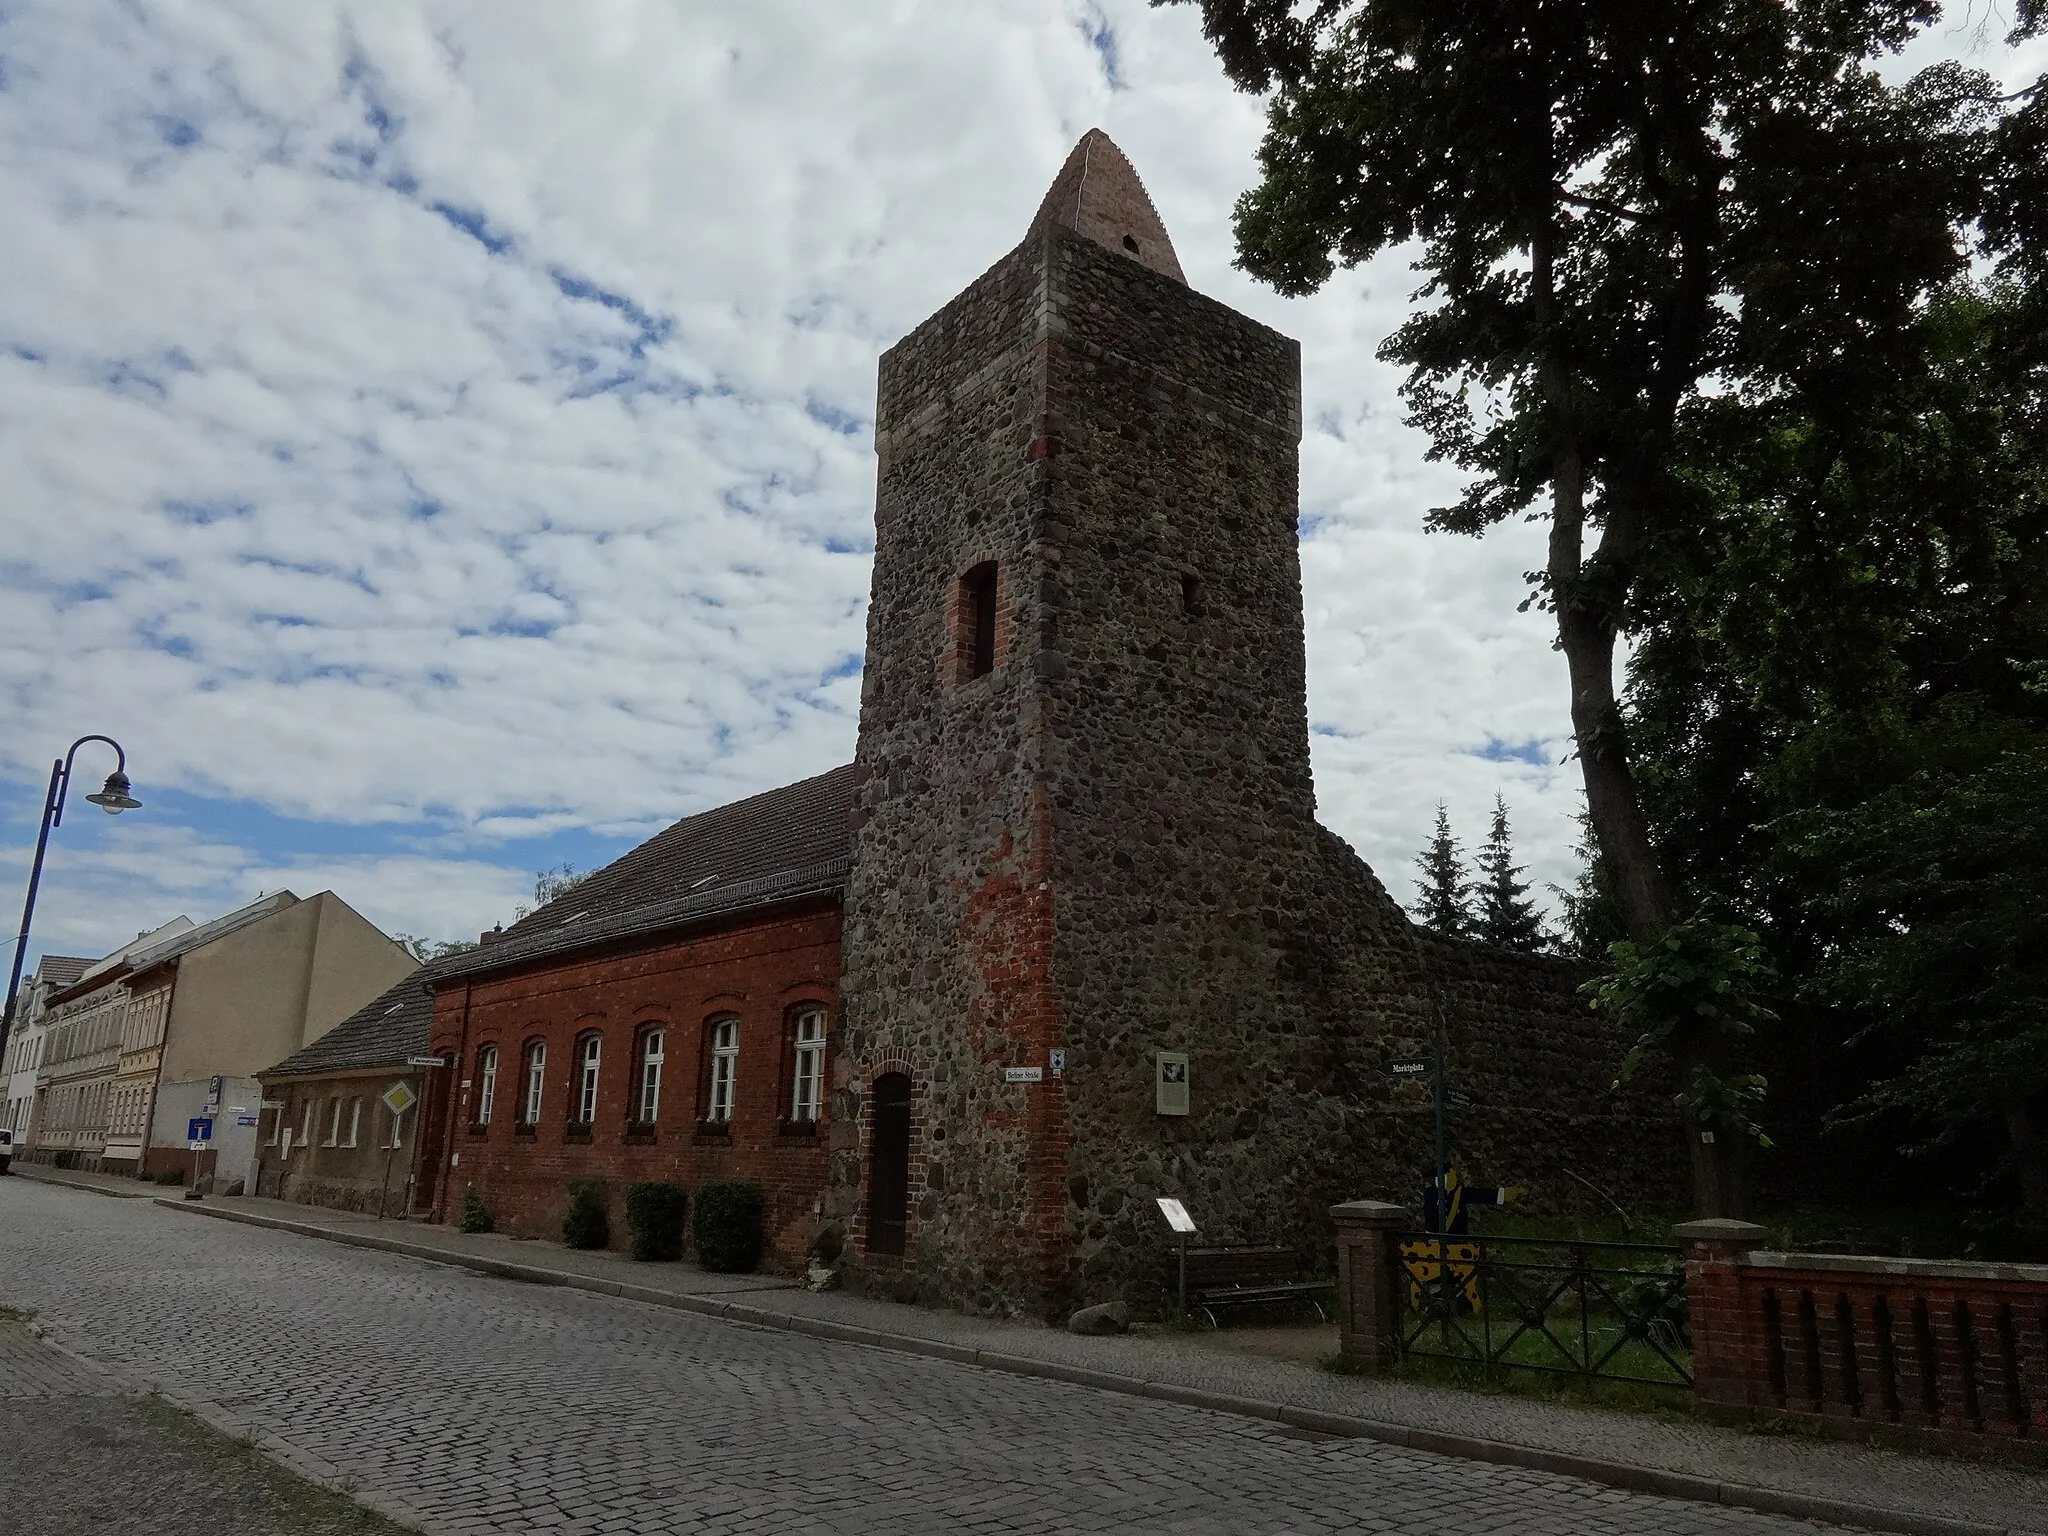 Photo showing: Berliner Torturm, Teil der mittelalterlichen Stadtbefestigung von Altlandsberg, eine Stadt im Landkreis Märkisch-Oderland, Brandenburg